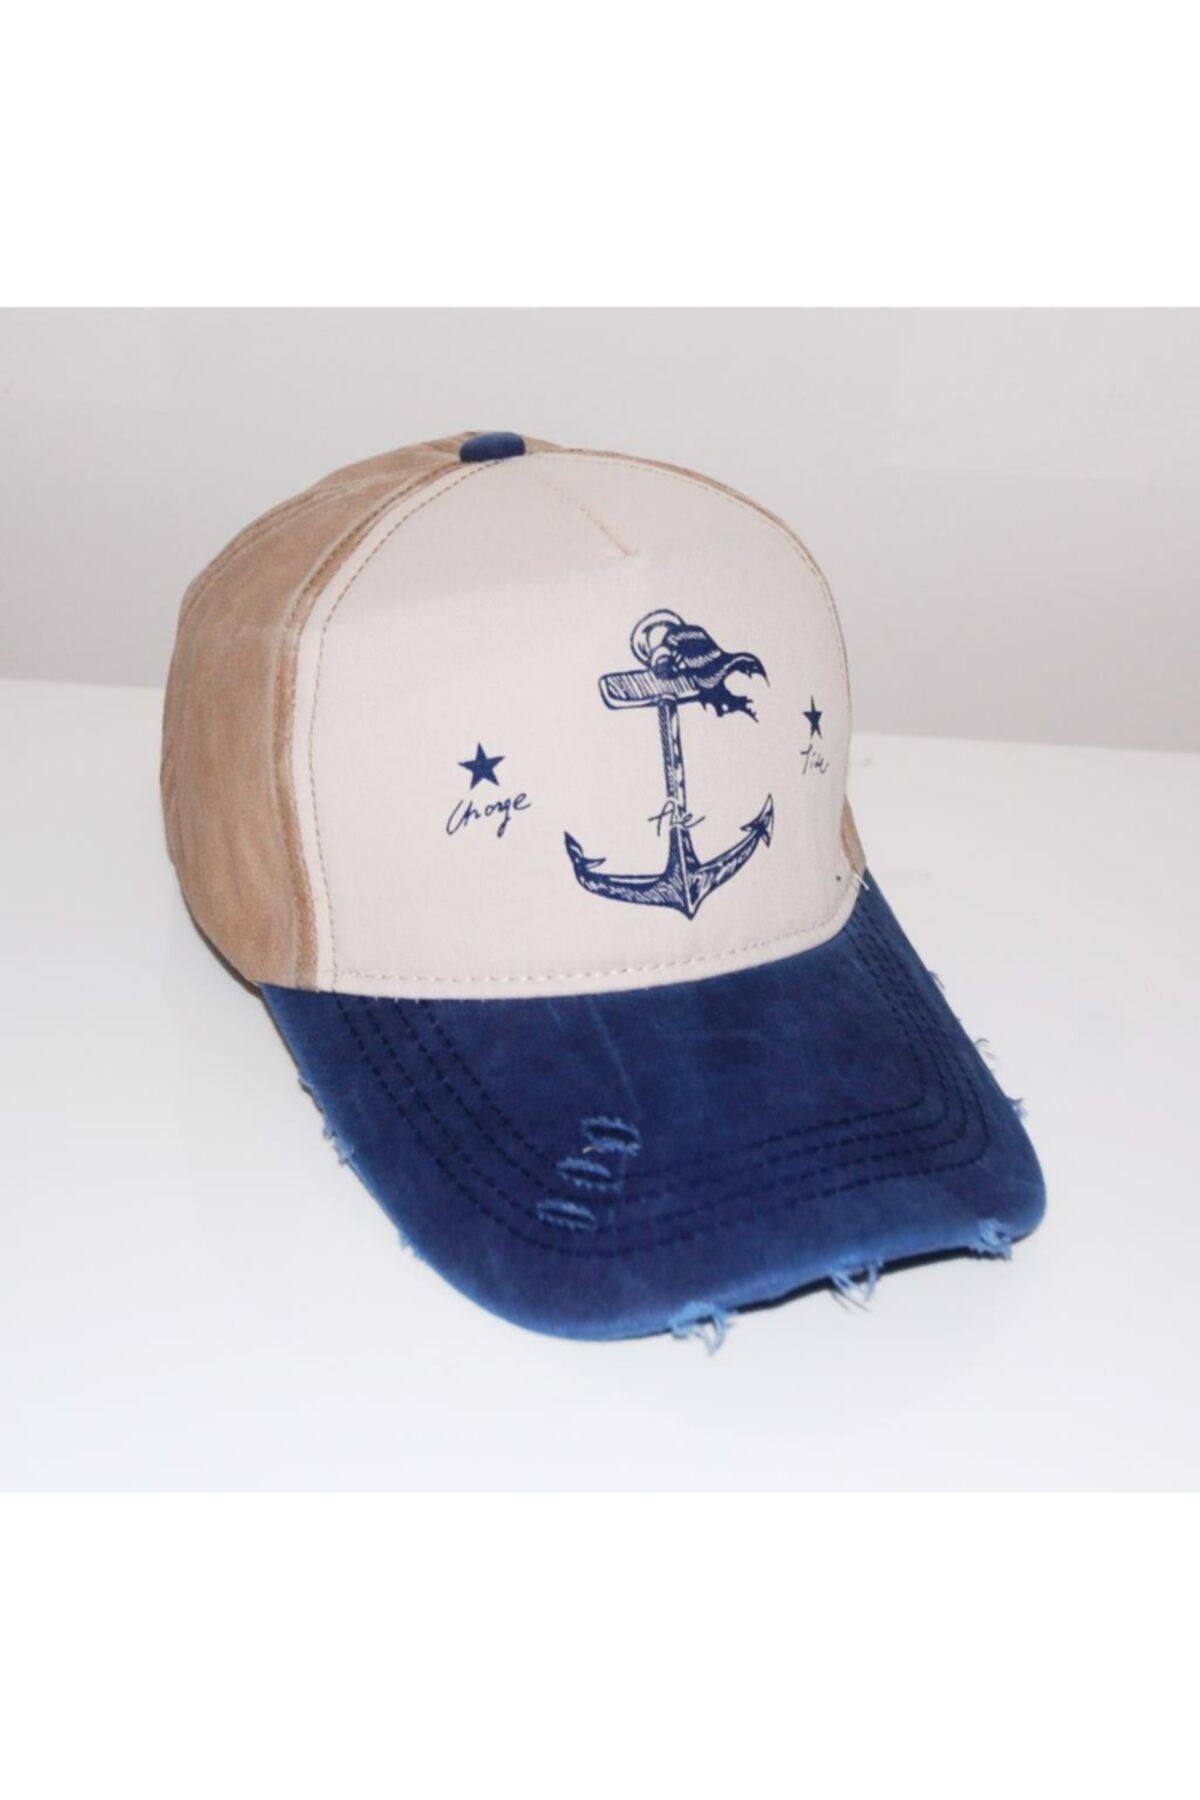 GÇM Cap Deniz Çapalı Balıkçı Eskitme Şapka 004